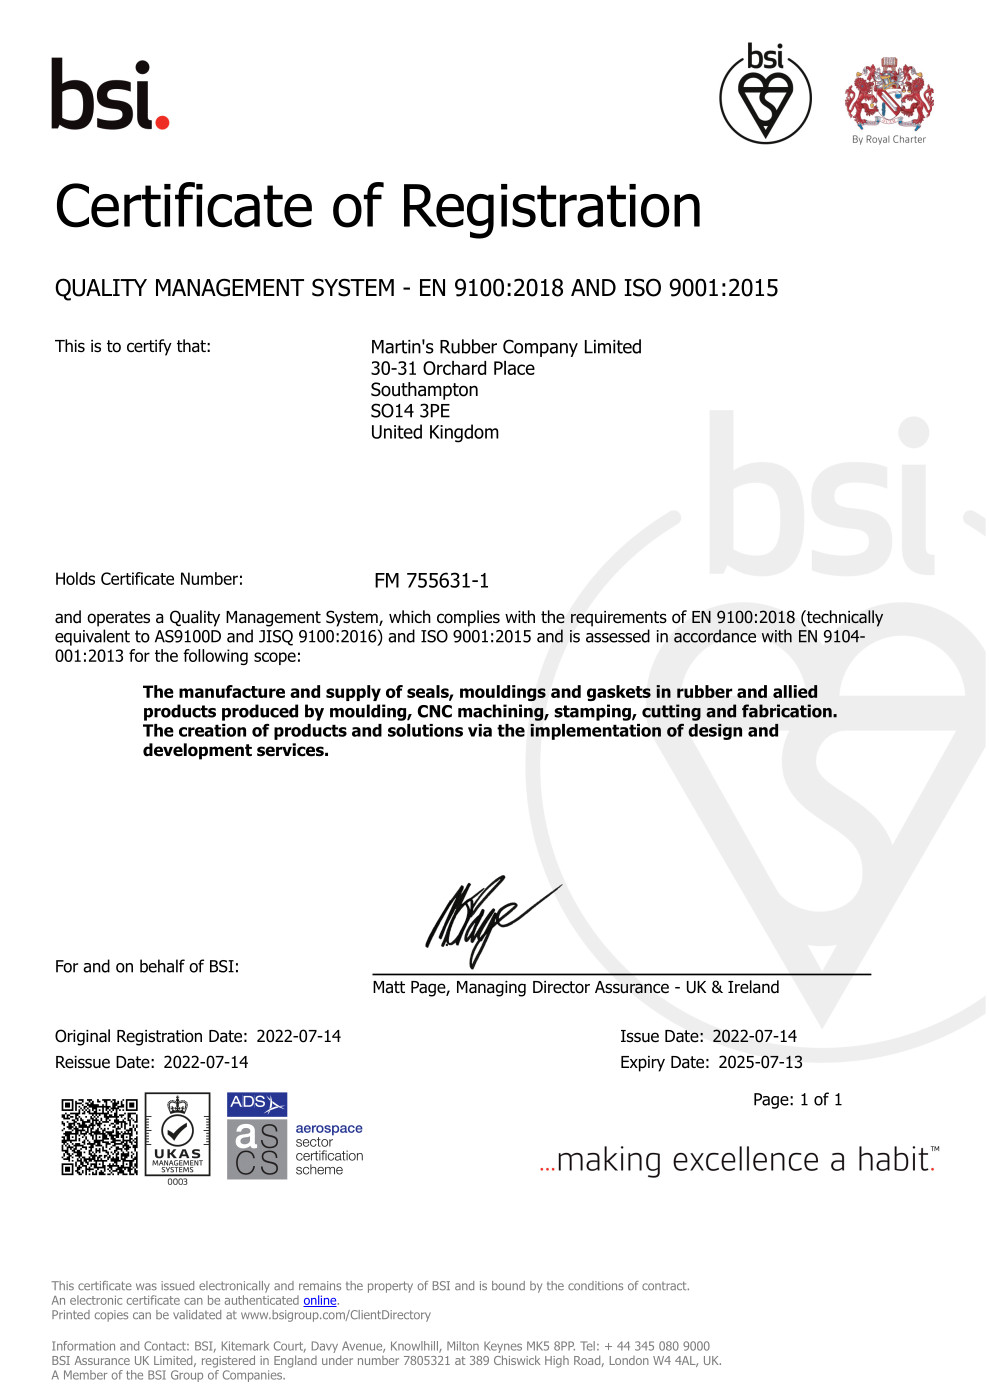 EN 9100 Certificate FM 755631-1